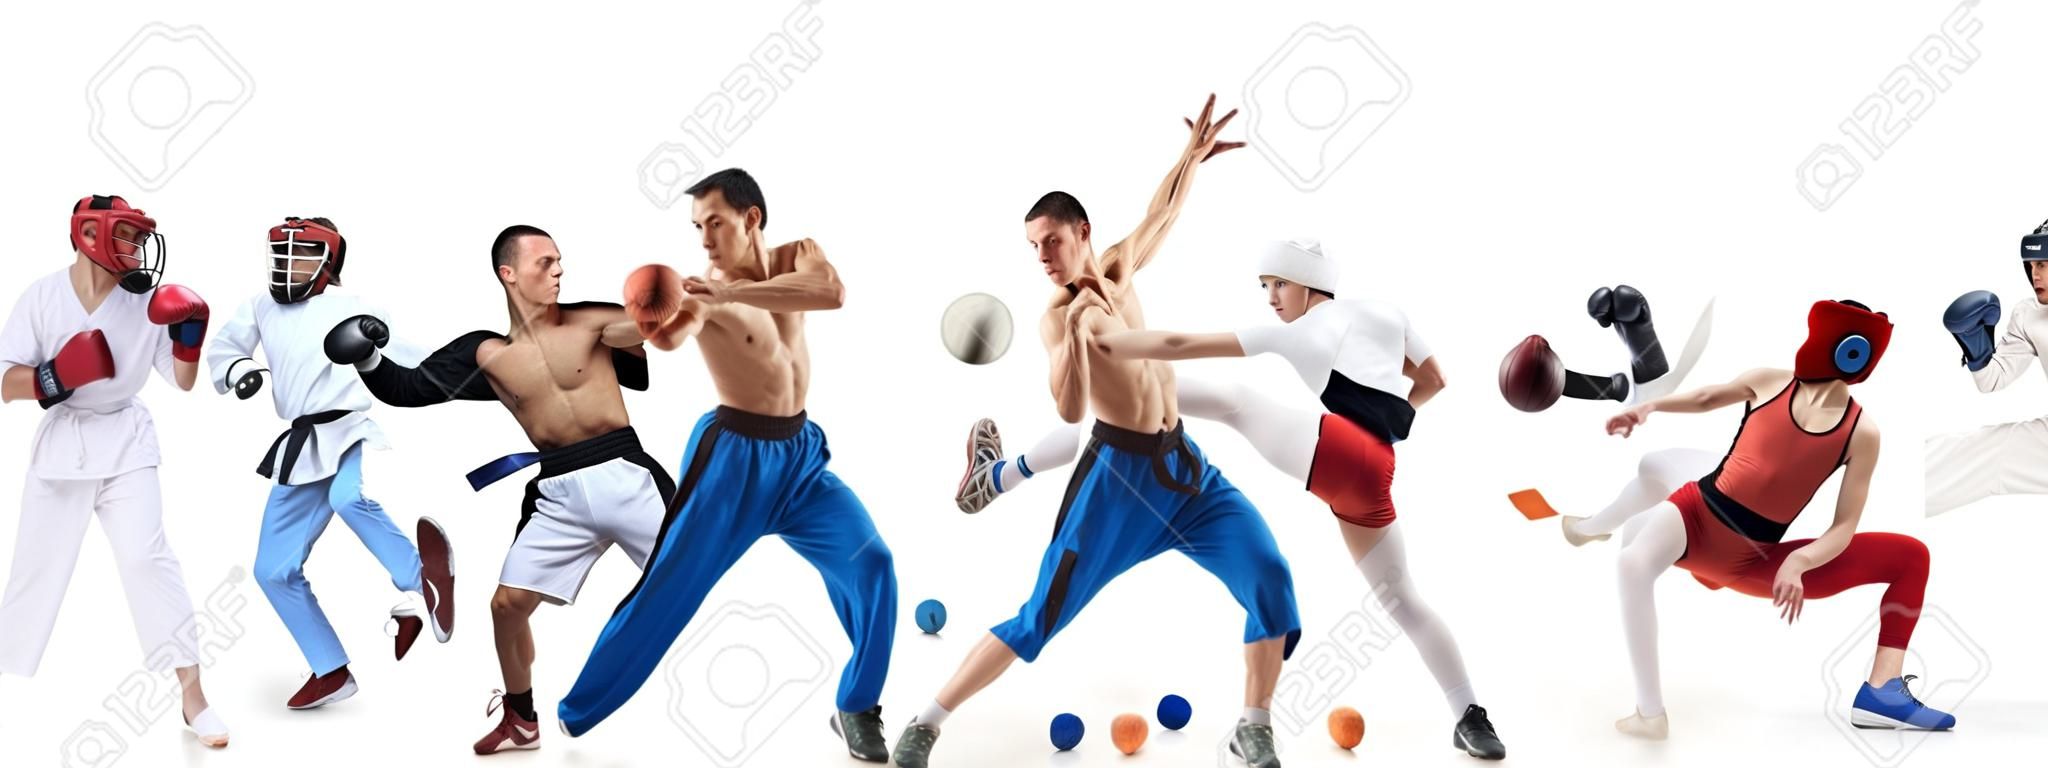 Kolaż sportowy o boksie, piłce nożnej, futbolu amerykańskim, koszykówce, hokeju na lodzie, szermierce, joggingu, taekwondo, tenisie